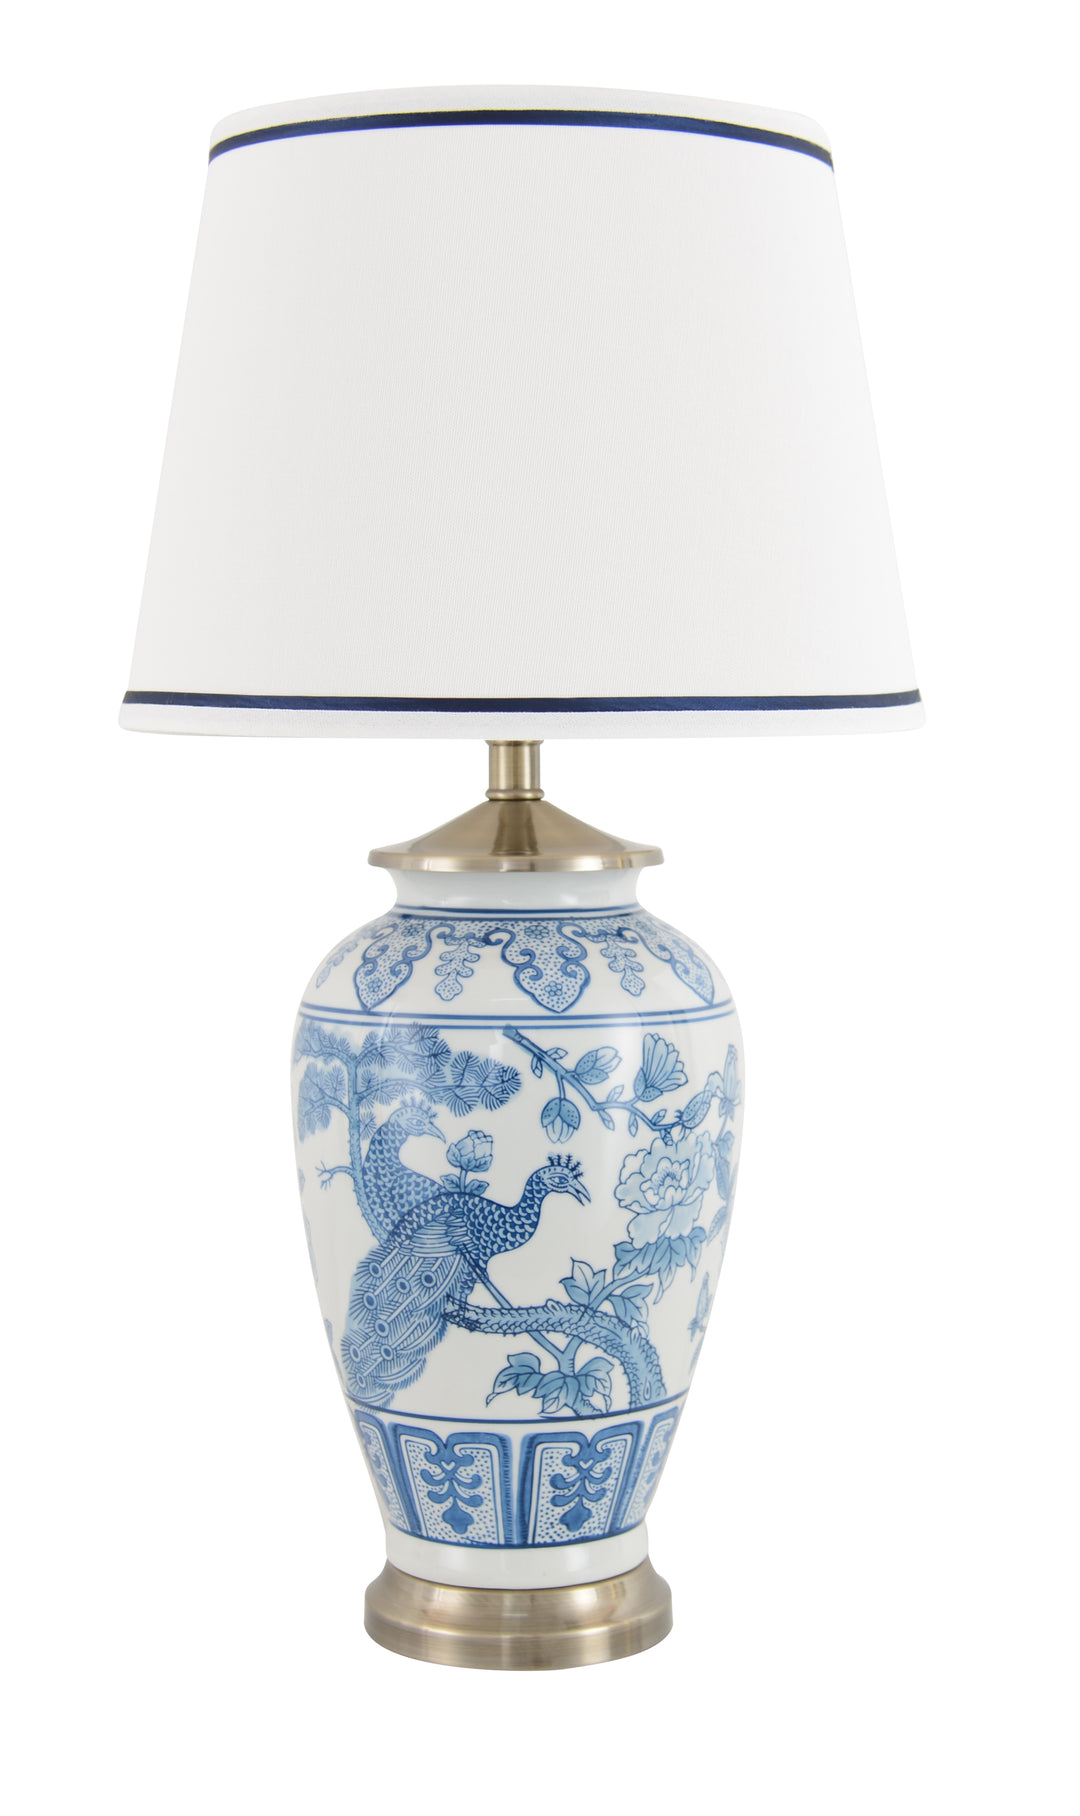 Peacock Blue & White Lamp Base 36cm